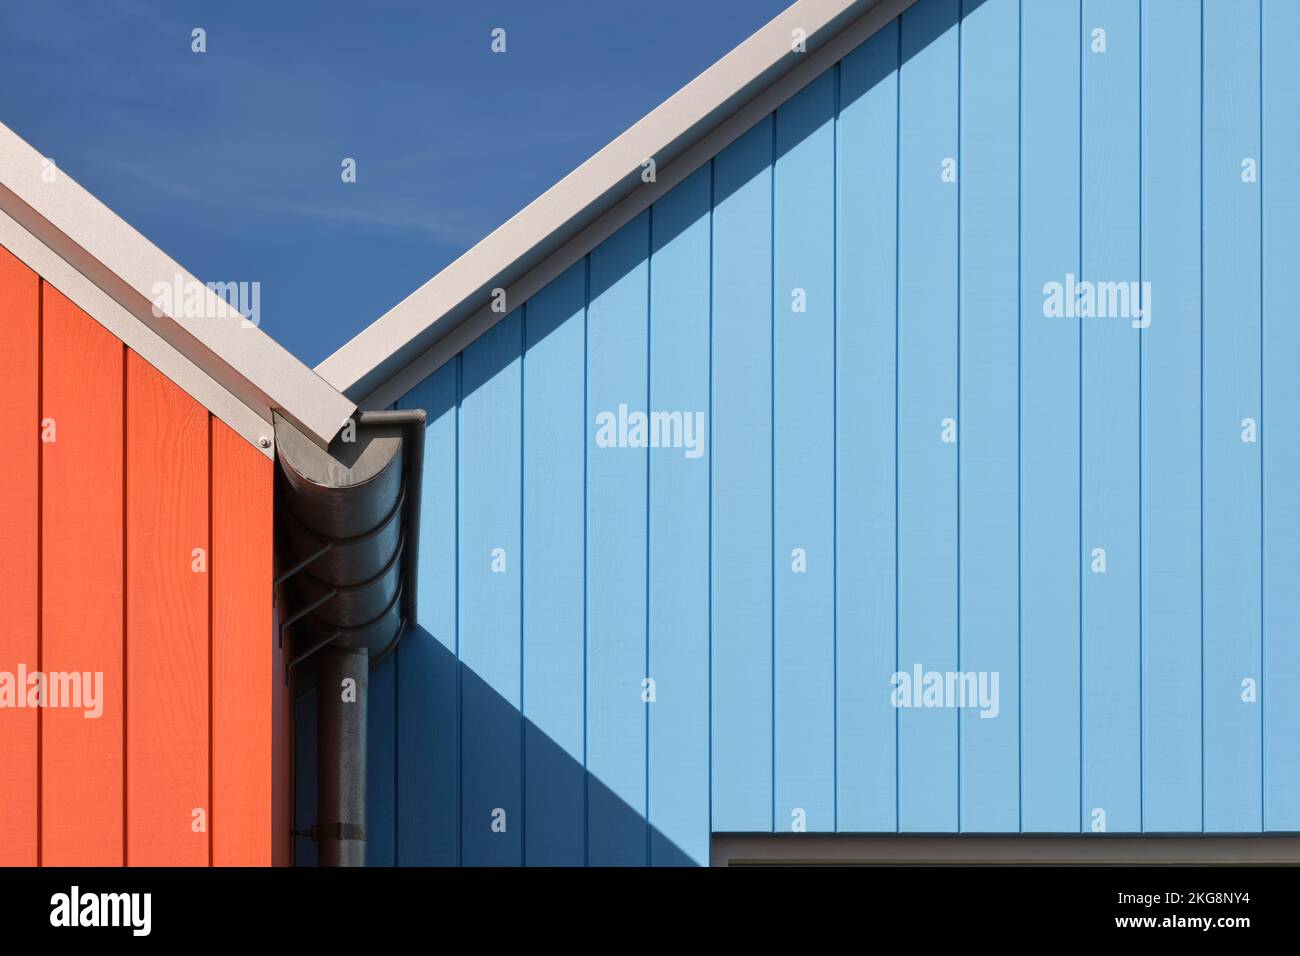 Detailfoto des bemalten Holzes einiger skandinavischer Gebäude in Lauwersoog, Niederlande. Abstraktes geometrisches Bild in Orange und Blau Stockfoto